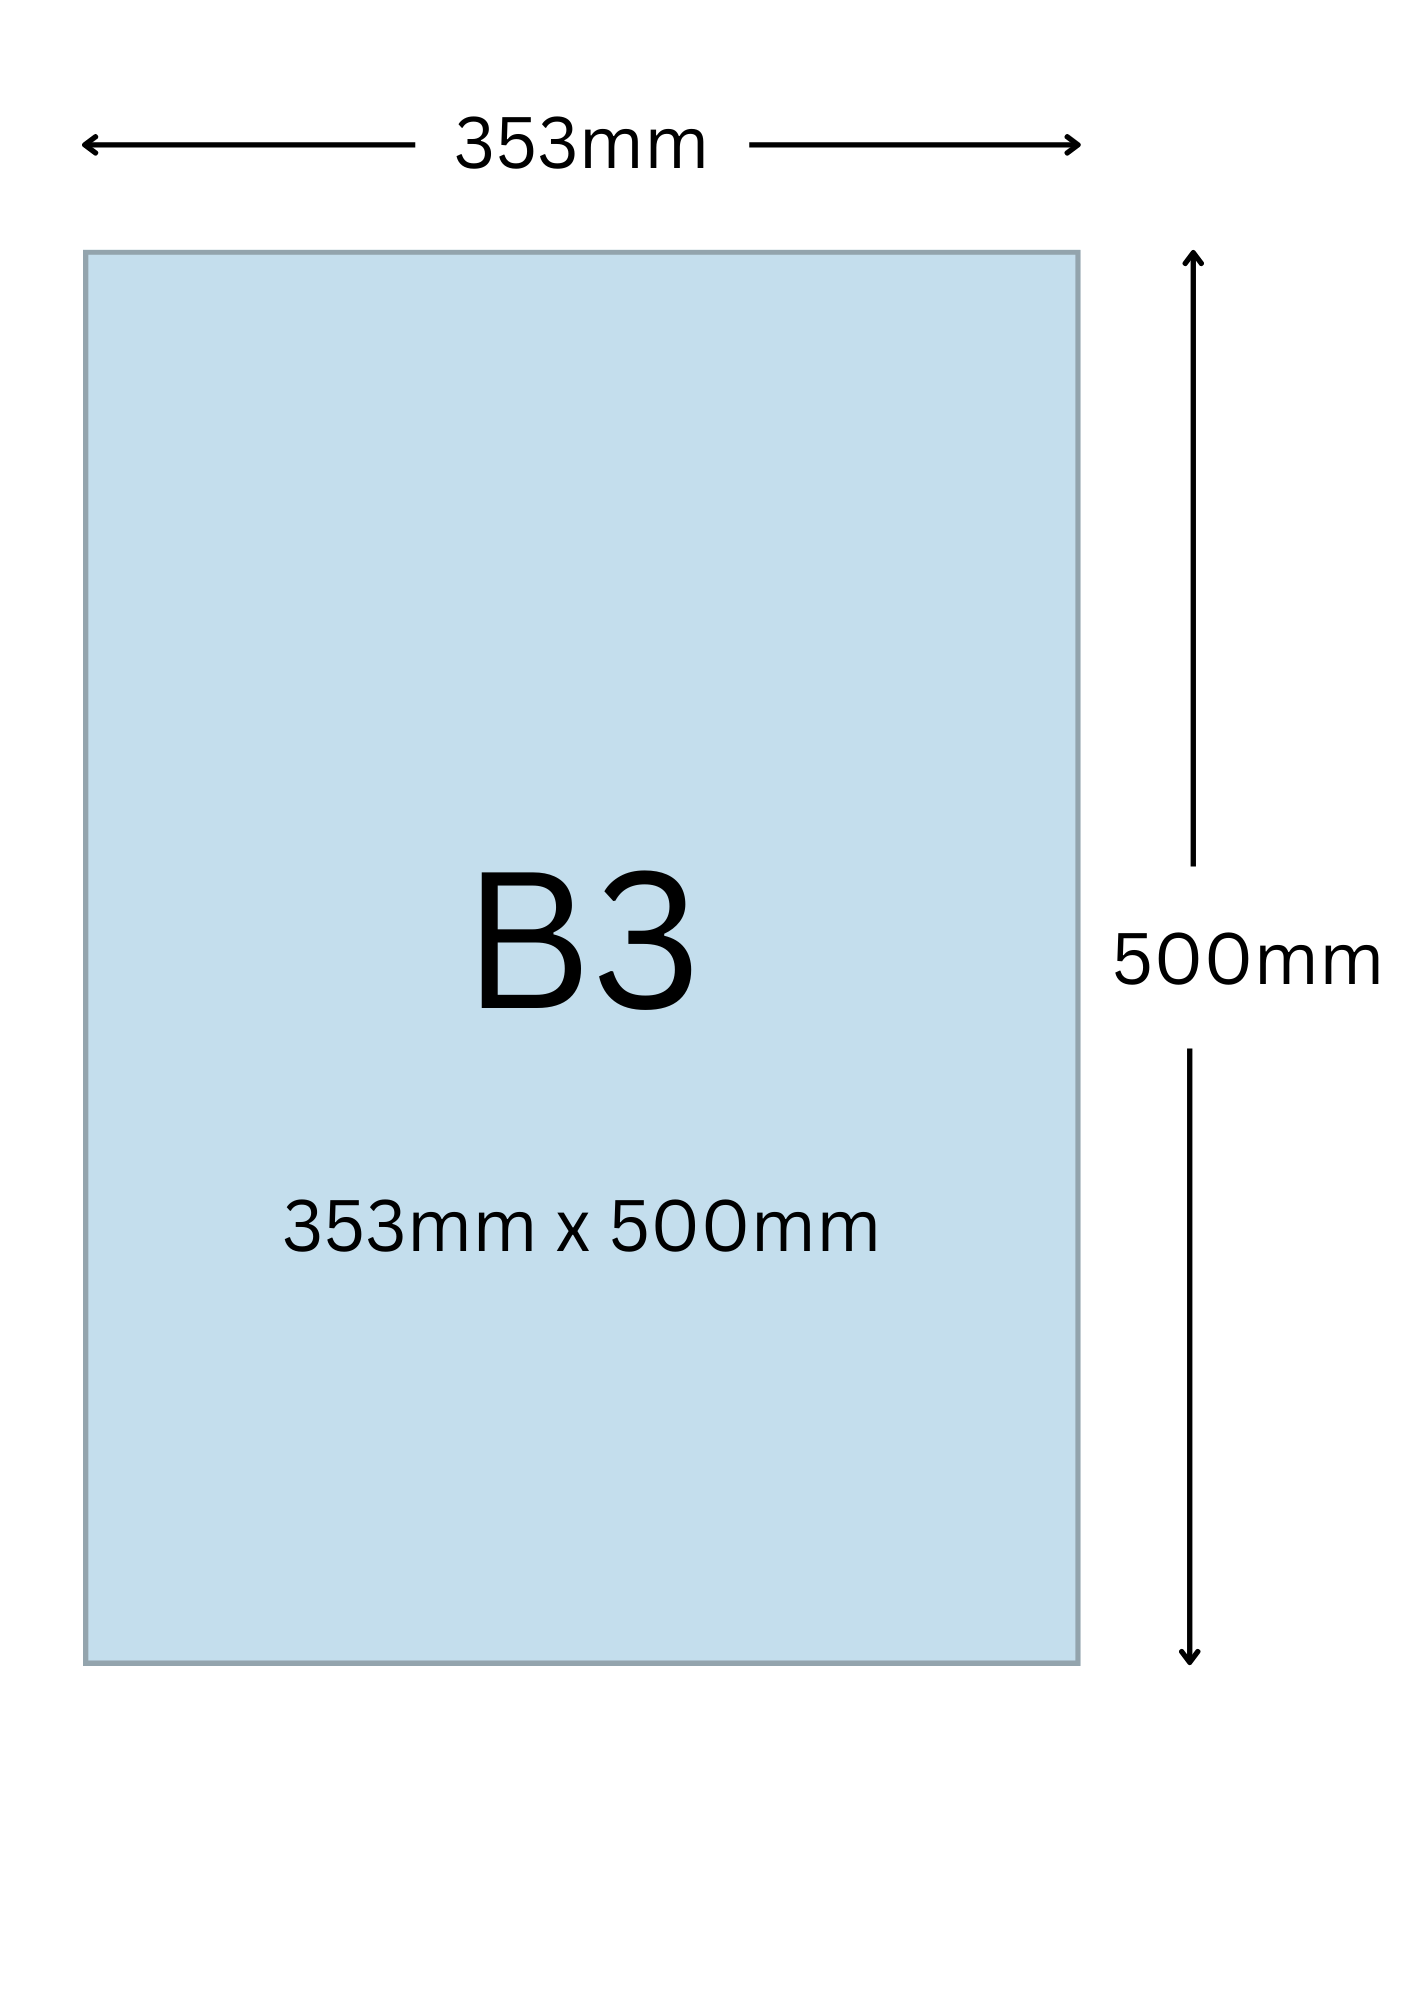 B3尺寸公分, B3紙張尺寸大小, B3紙張對應開數是幾開